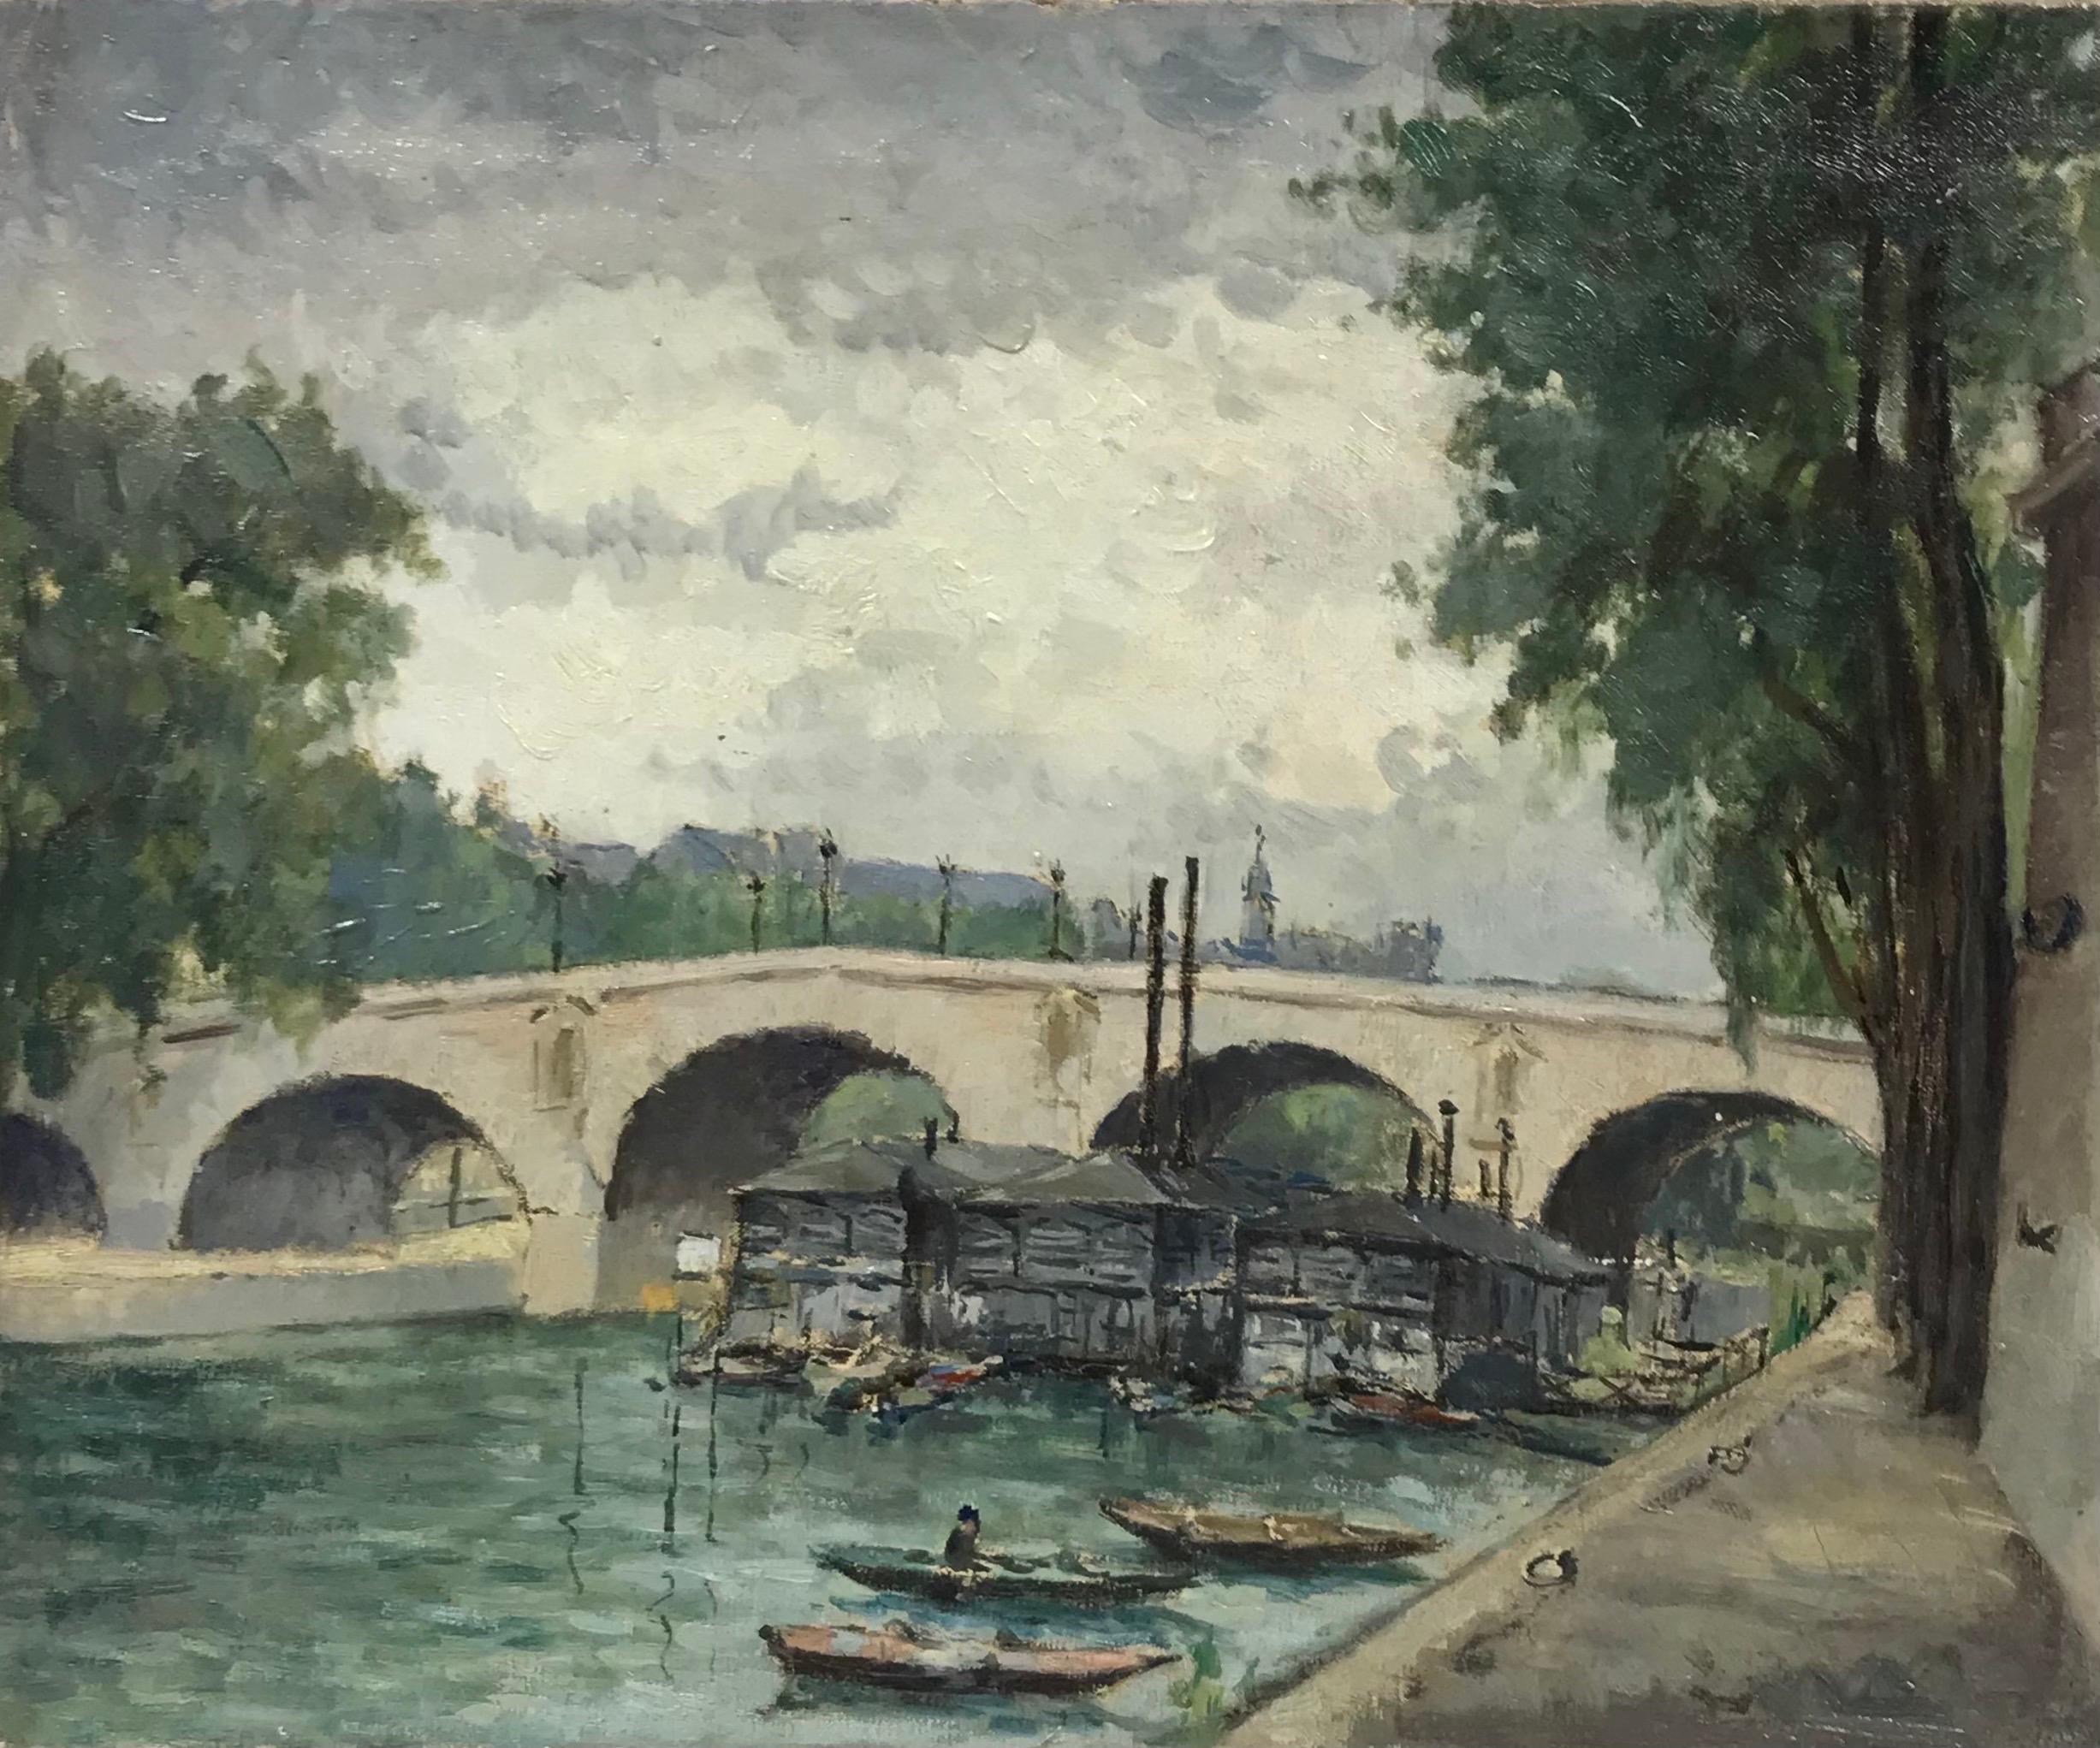 Le Pont Marie, Paris Skyline over the River Seine, vintage oil painting